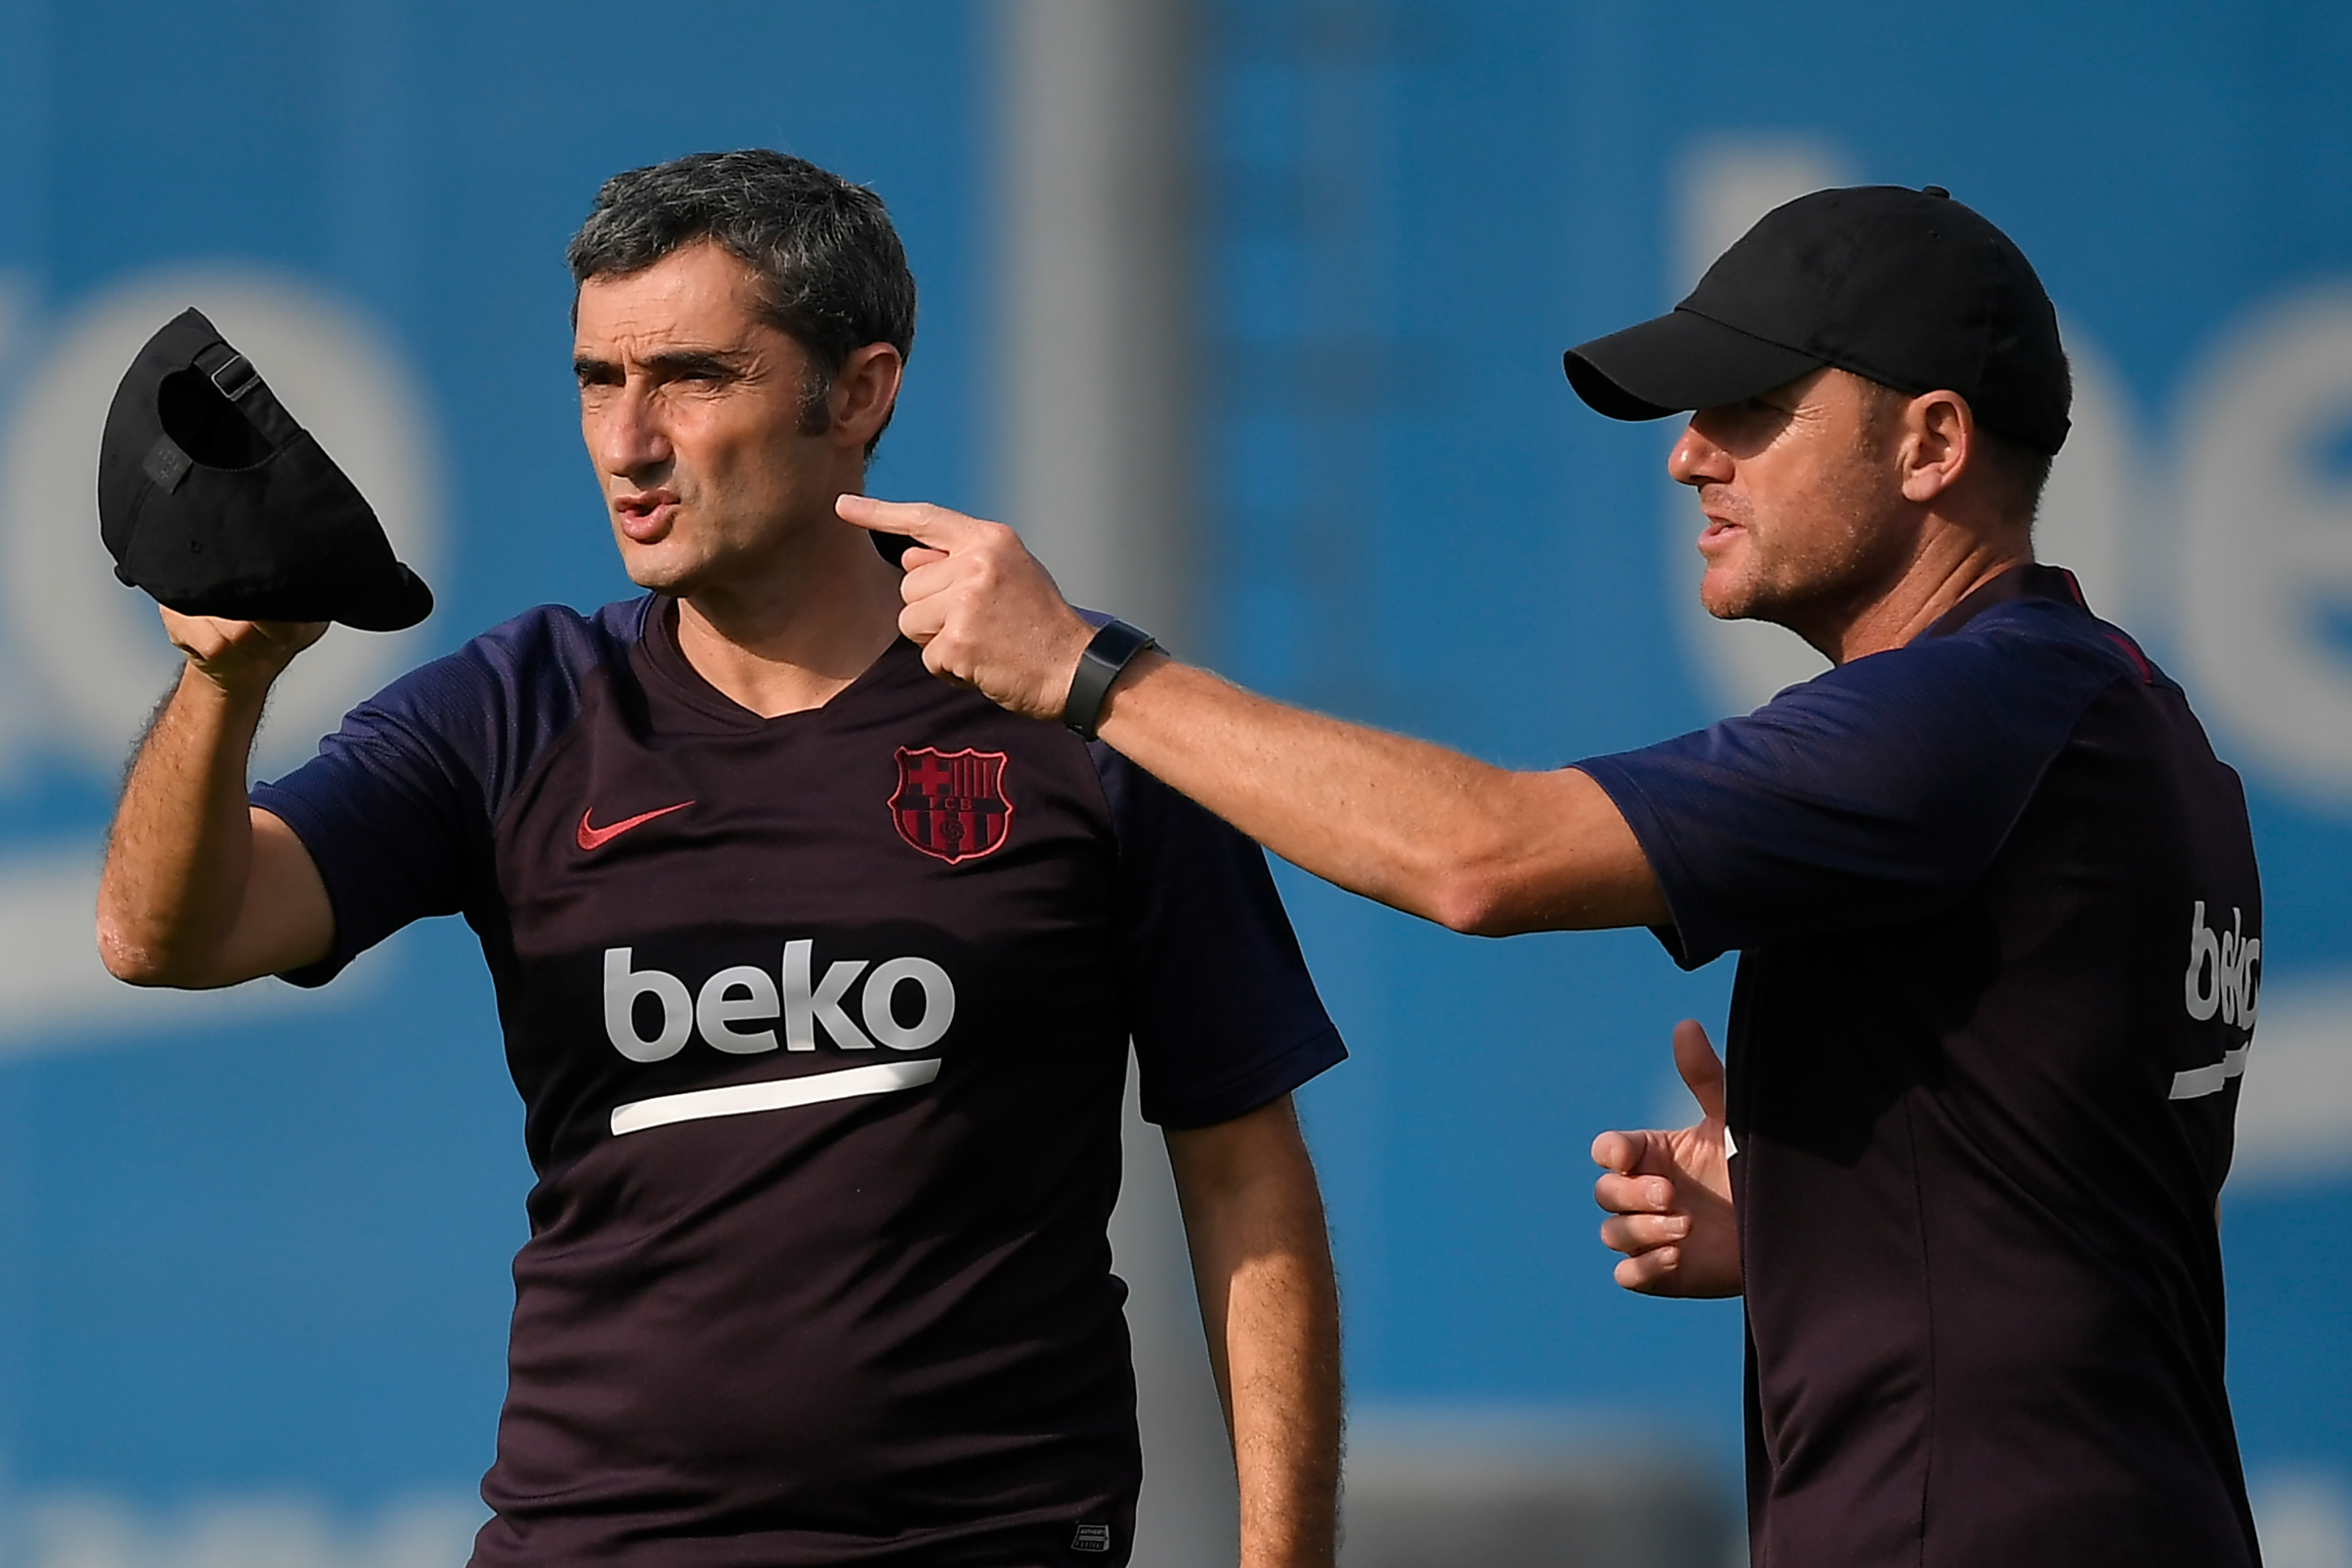 El técnico del Barcelona, Ernesto Valverde, espera llegar a mayo del 2020 con la opción de ganar los tres campeonatos. (Foto Prensa Libre: AFP)